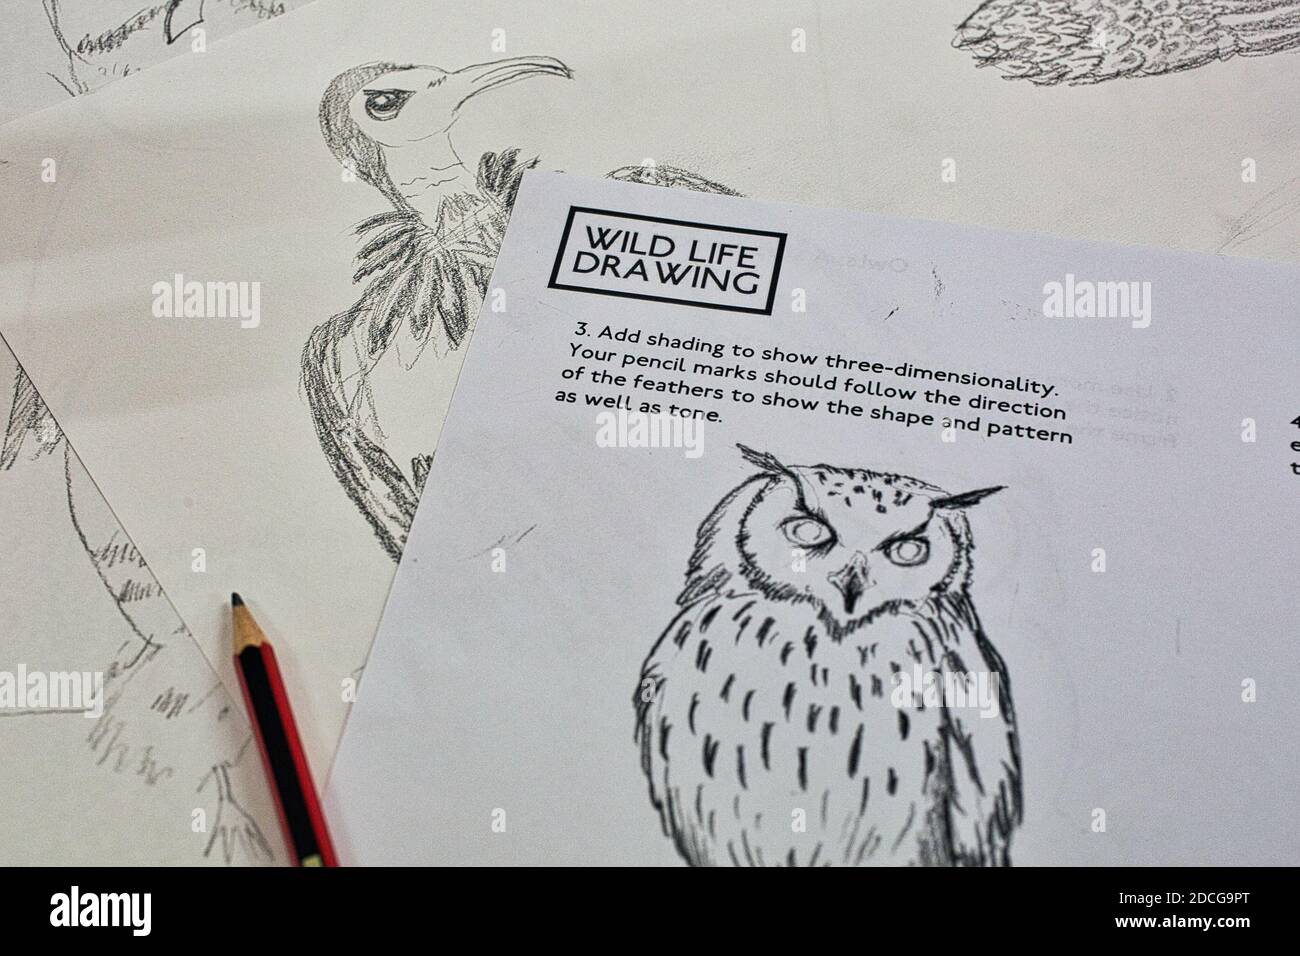 GRAN BRETAGNA / Inghilterra / Londra / Wild Life Drawing /artista e appassionato di fauna selvatica Jennie Webber è dietro Wildlife Drawing - life drawing classes. Foto Stock